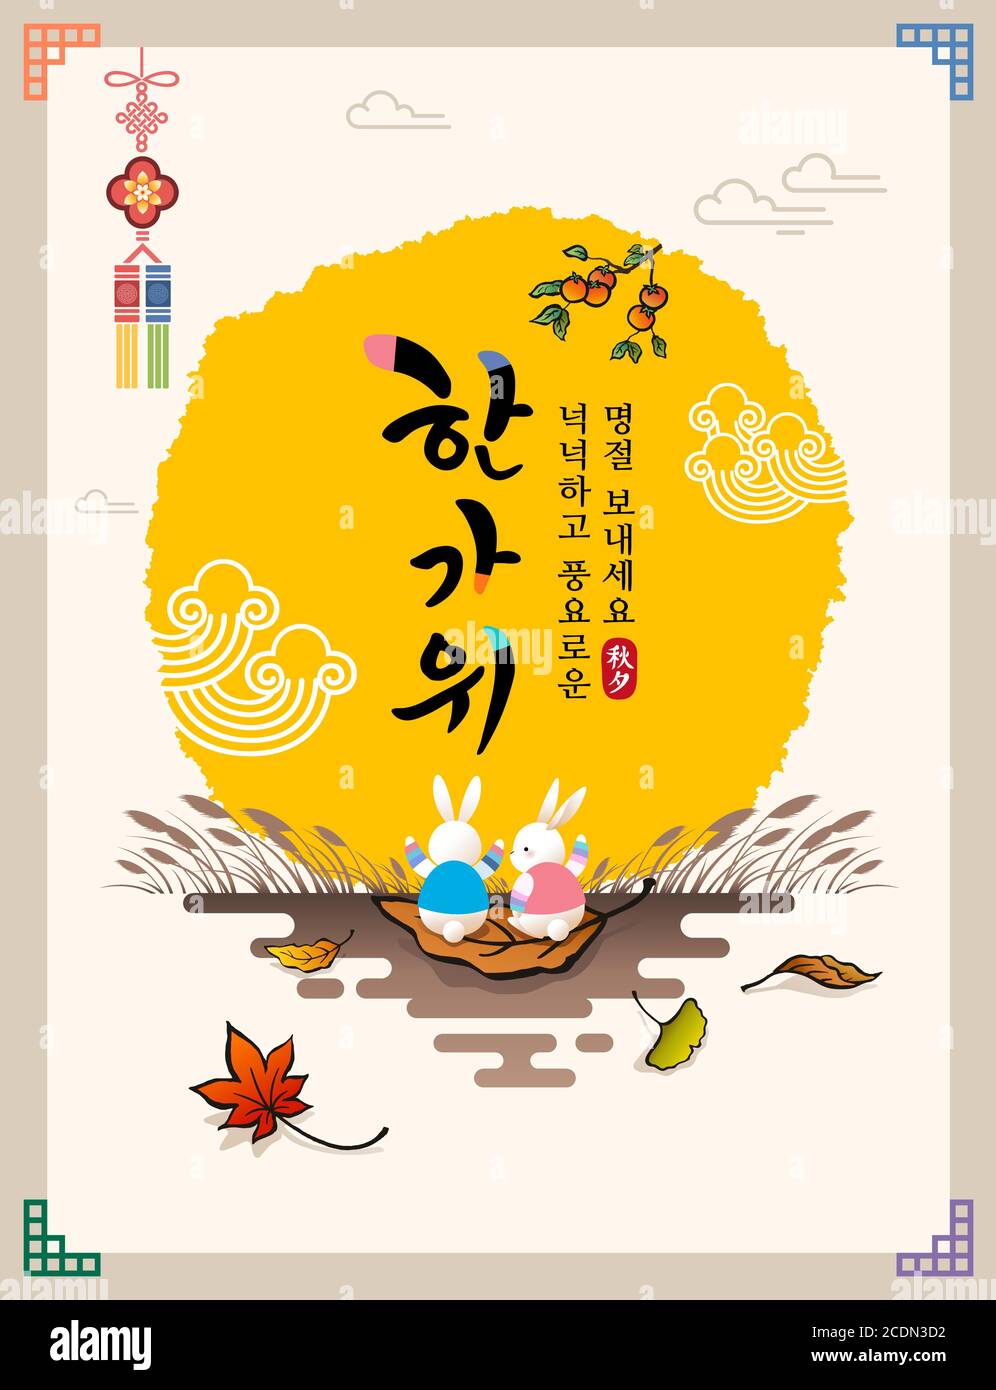 Koreanischer Erntedankfest. Vollmond und Kaninchen, Kaki-Baum, Ahornblatt, traditionelles Design-Konzept. Hangawi, Frohe Feiertage, Koreanische Übersetzung. Stock Vektor